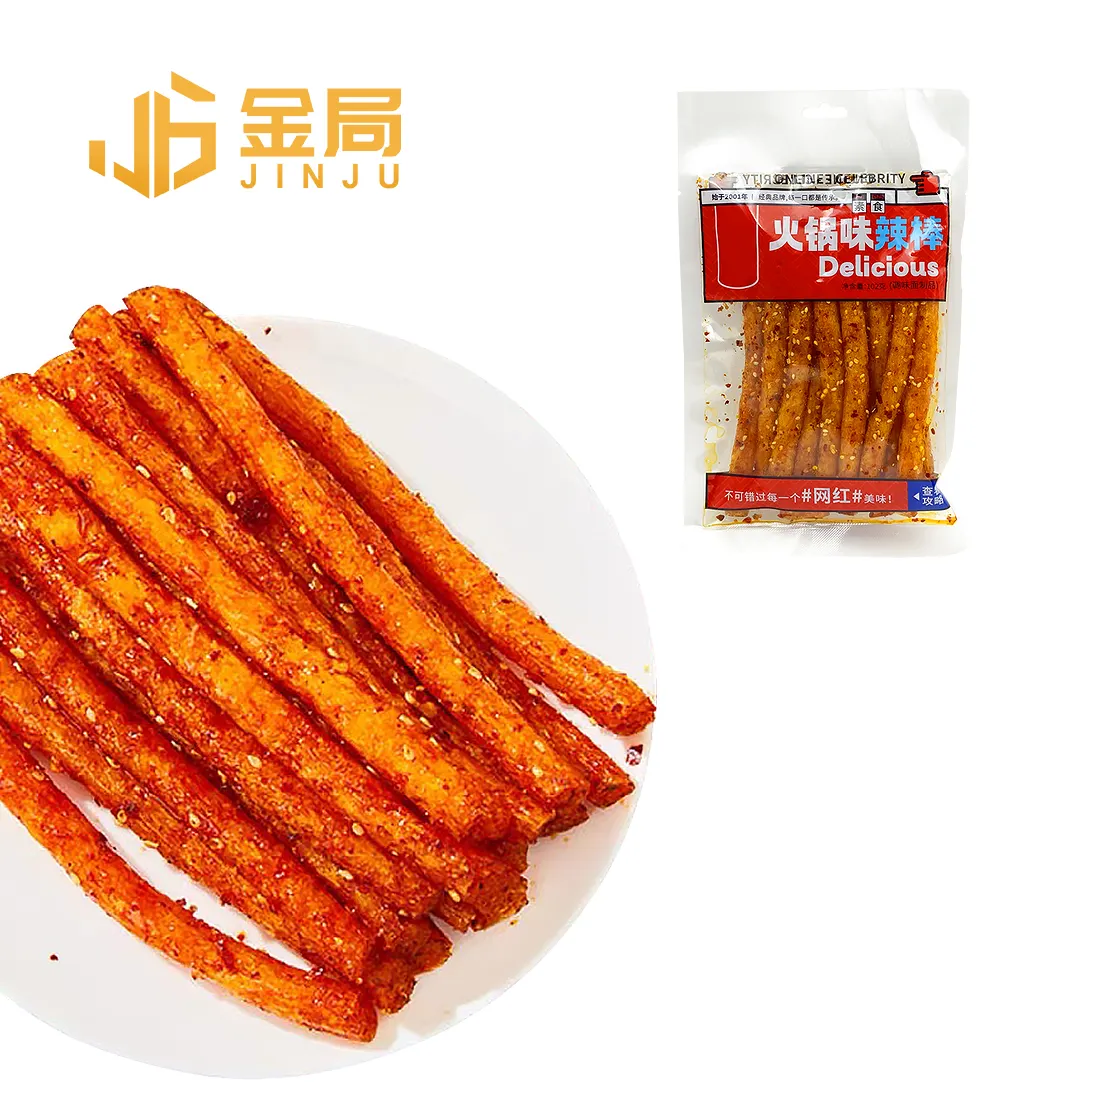 Hot bán phổ biến Trung Quốc Dải cay latiao hạt đồ ăn nhẹ đồ ăn nhẹ Trung Quốc Dải cay